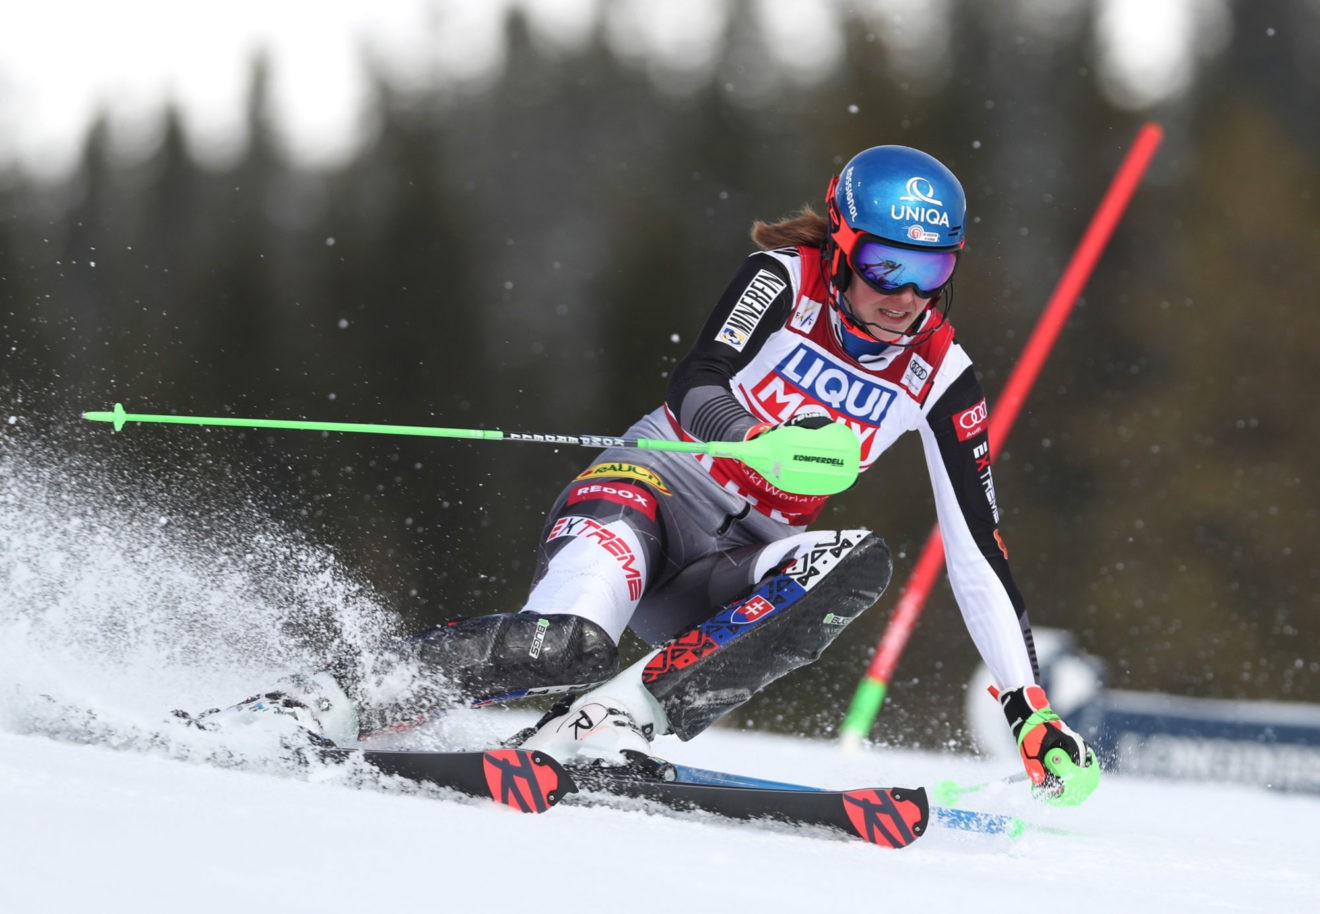 Ski alpin: Vlhova vainqueure à Are, reprend la tête du général